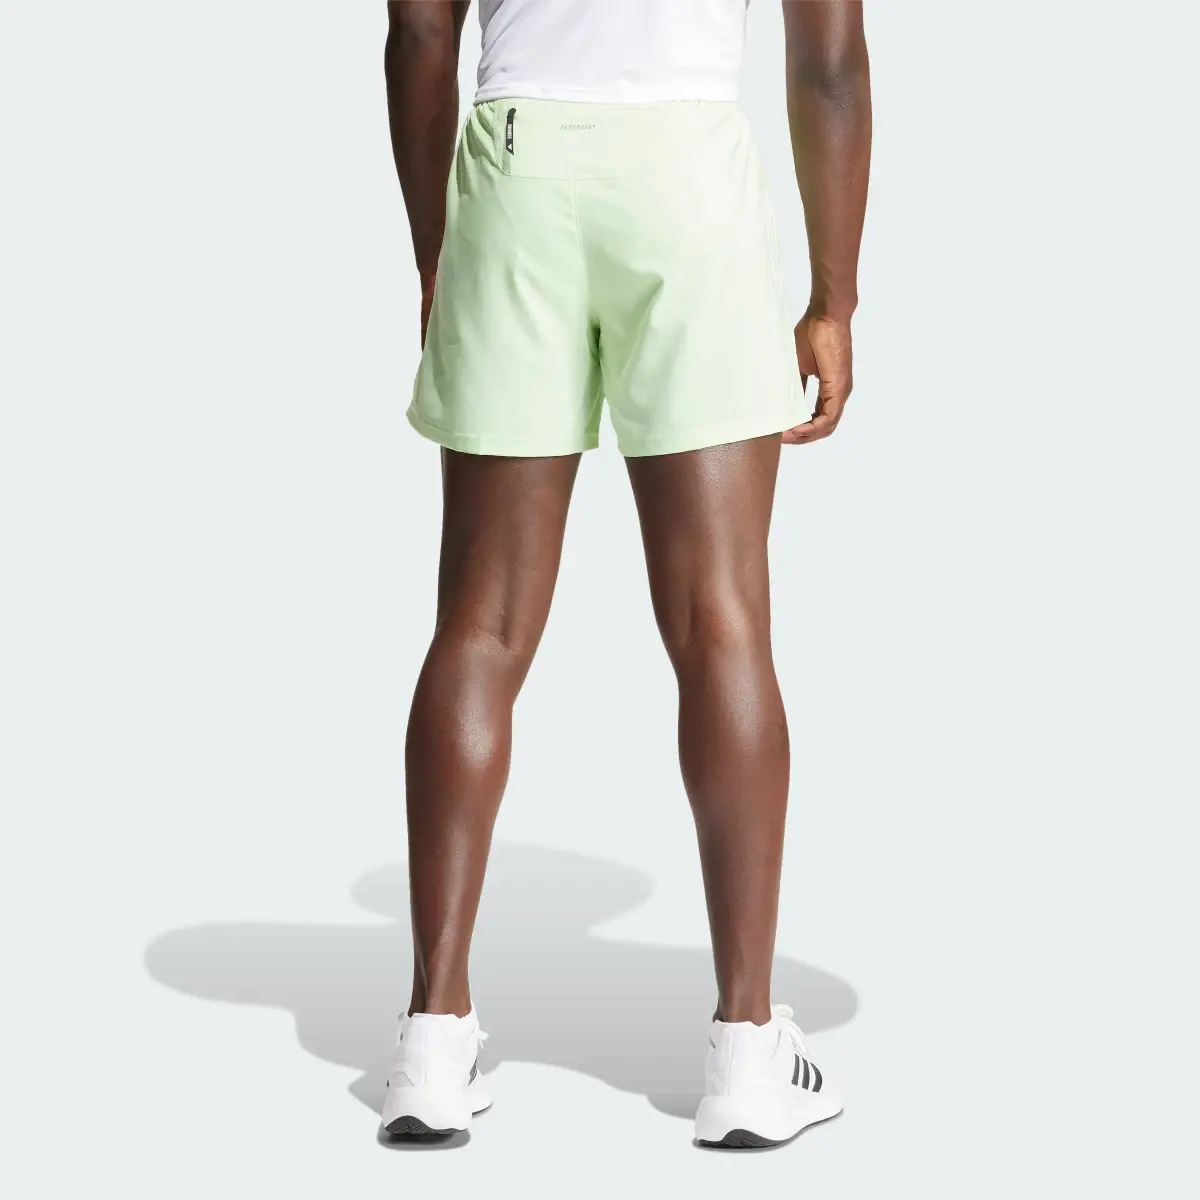 Adidas Own The Run Shorts. 2